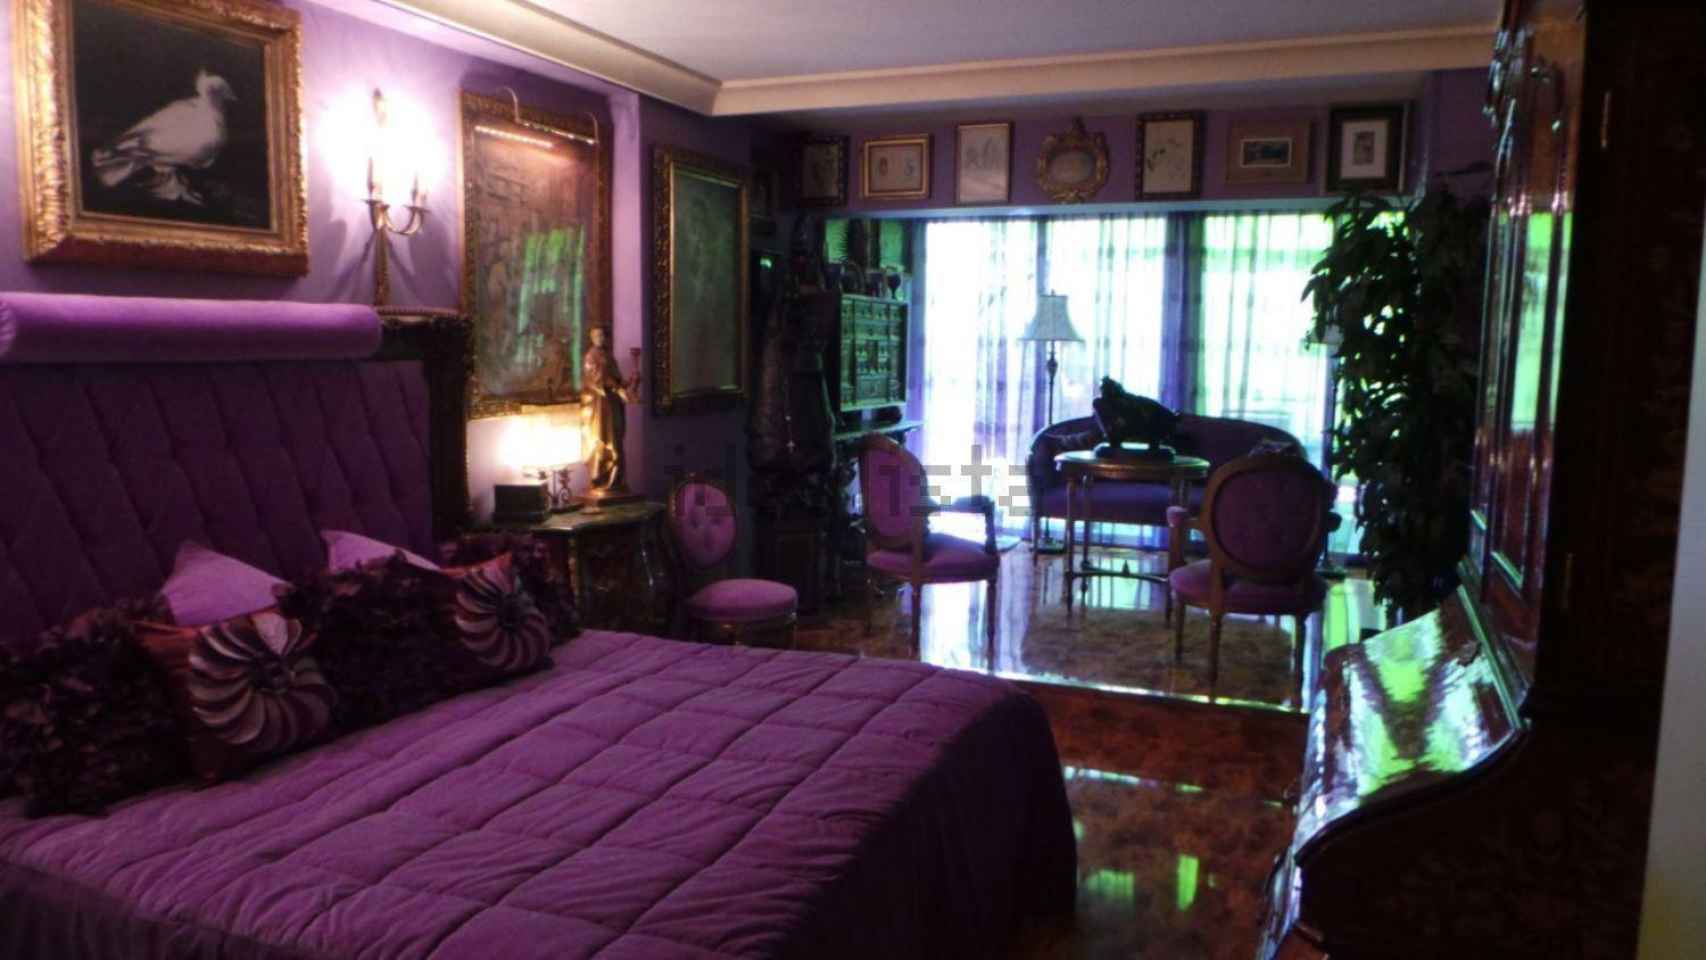 Uno de los dormitorios de la casa decorado en tonos violeta